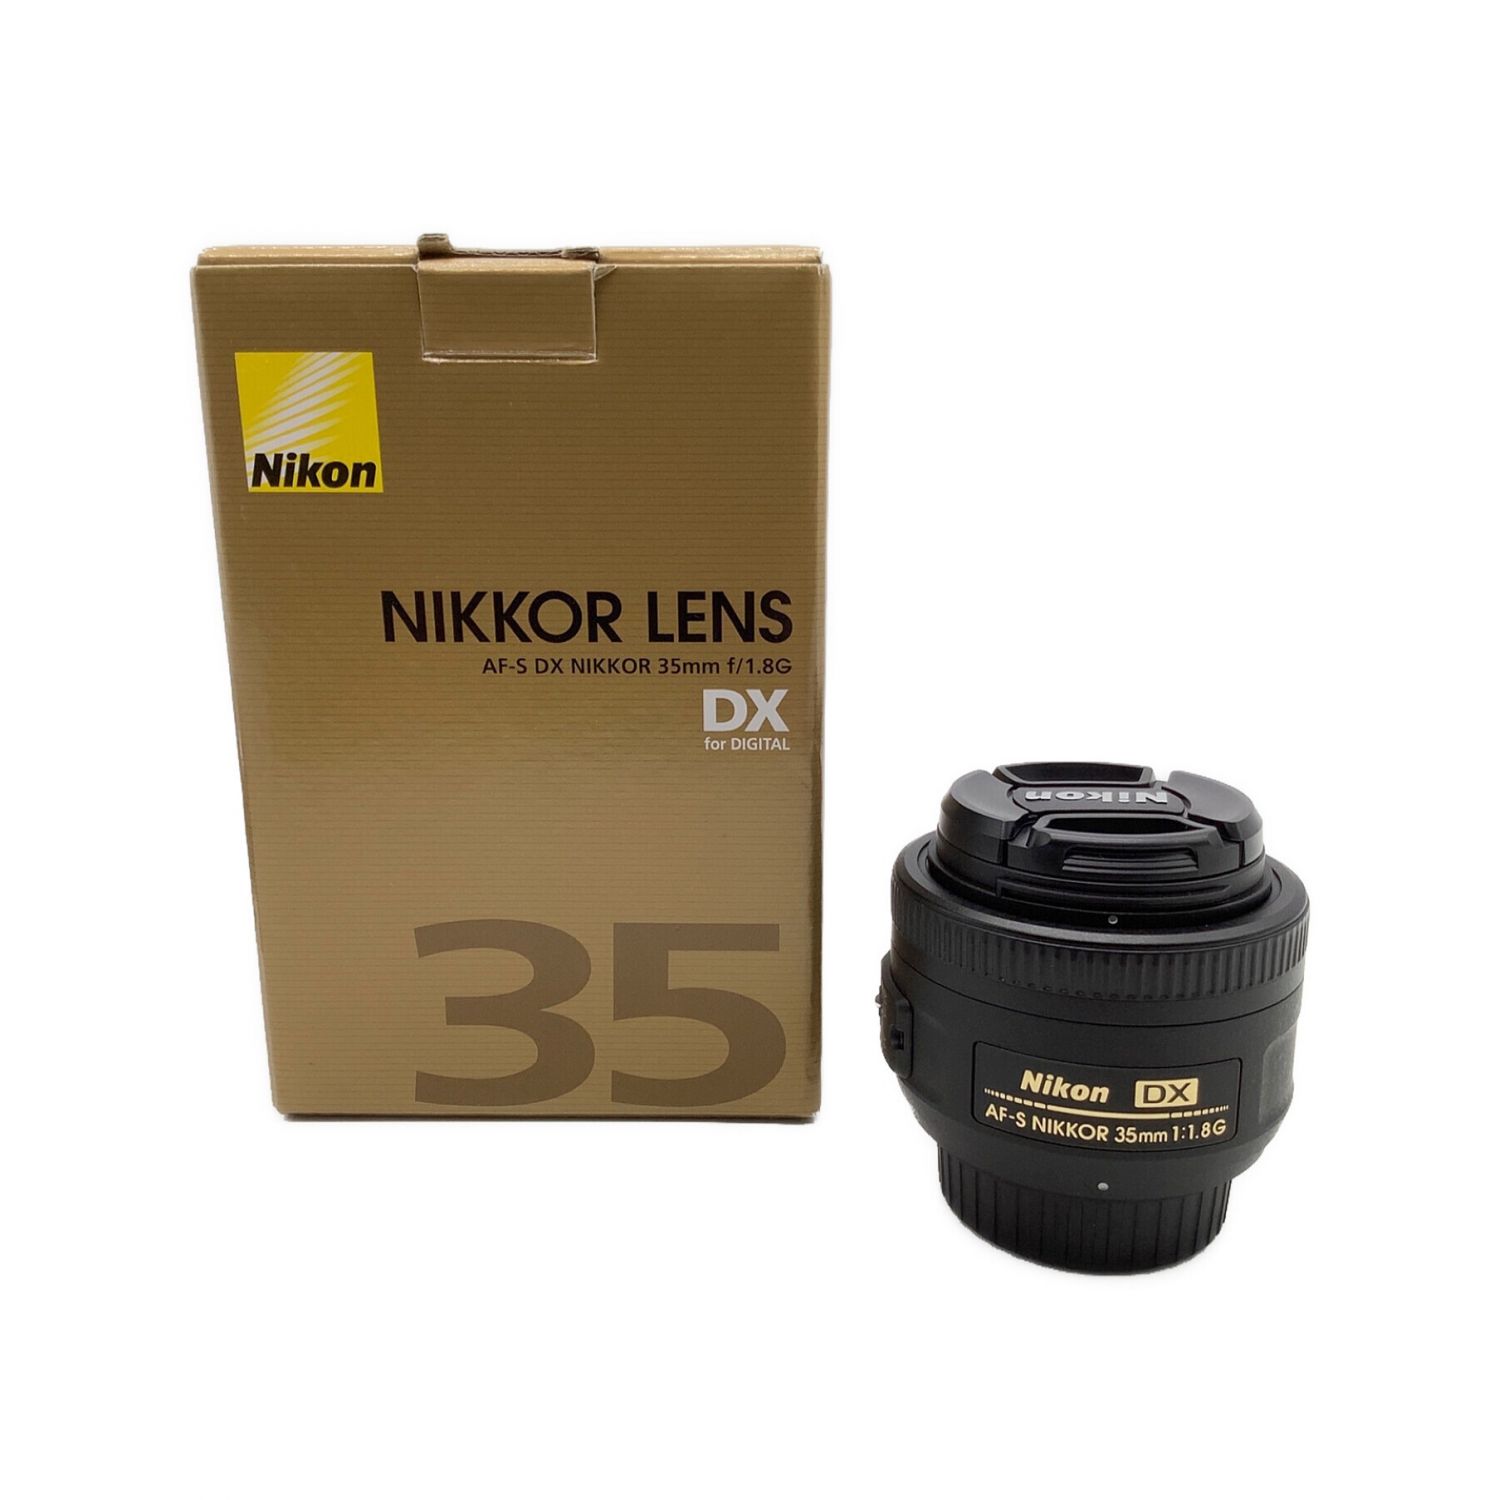 Nikon (ニコン) 単焦点レンズ AF-S DX NIKKOR 35mm f/1.8G 35 mm 